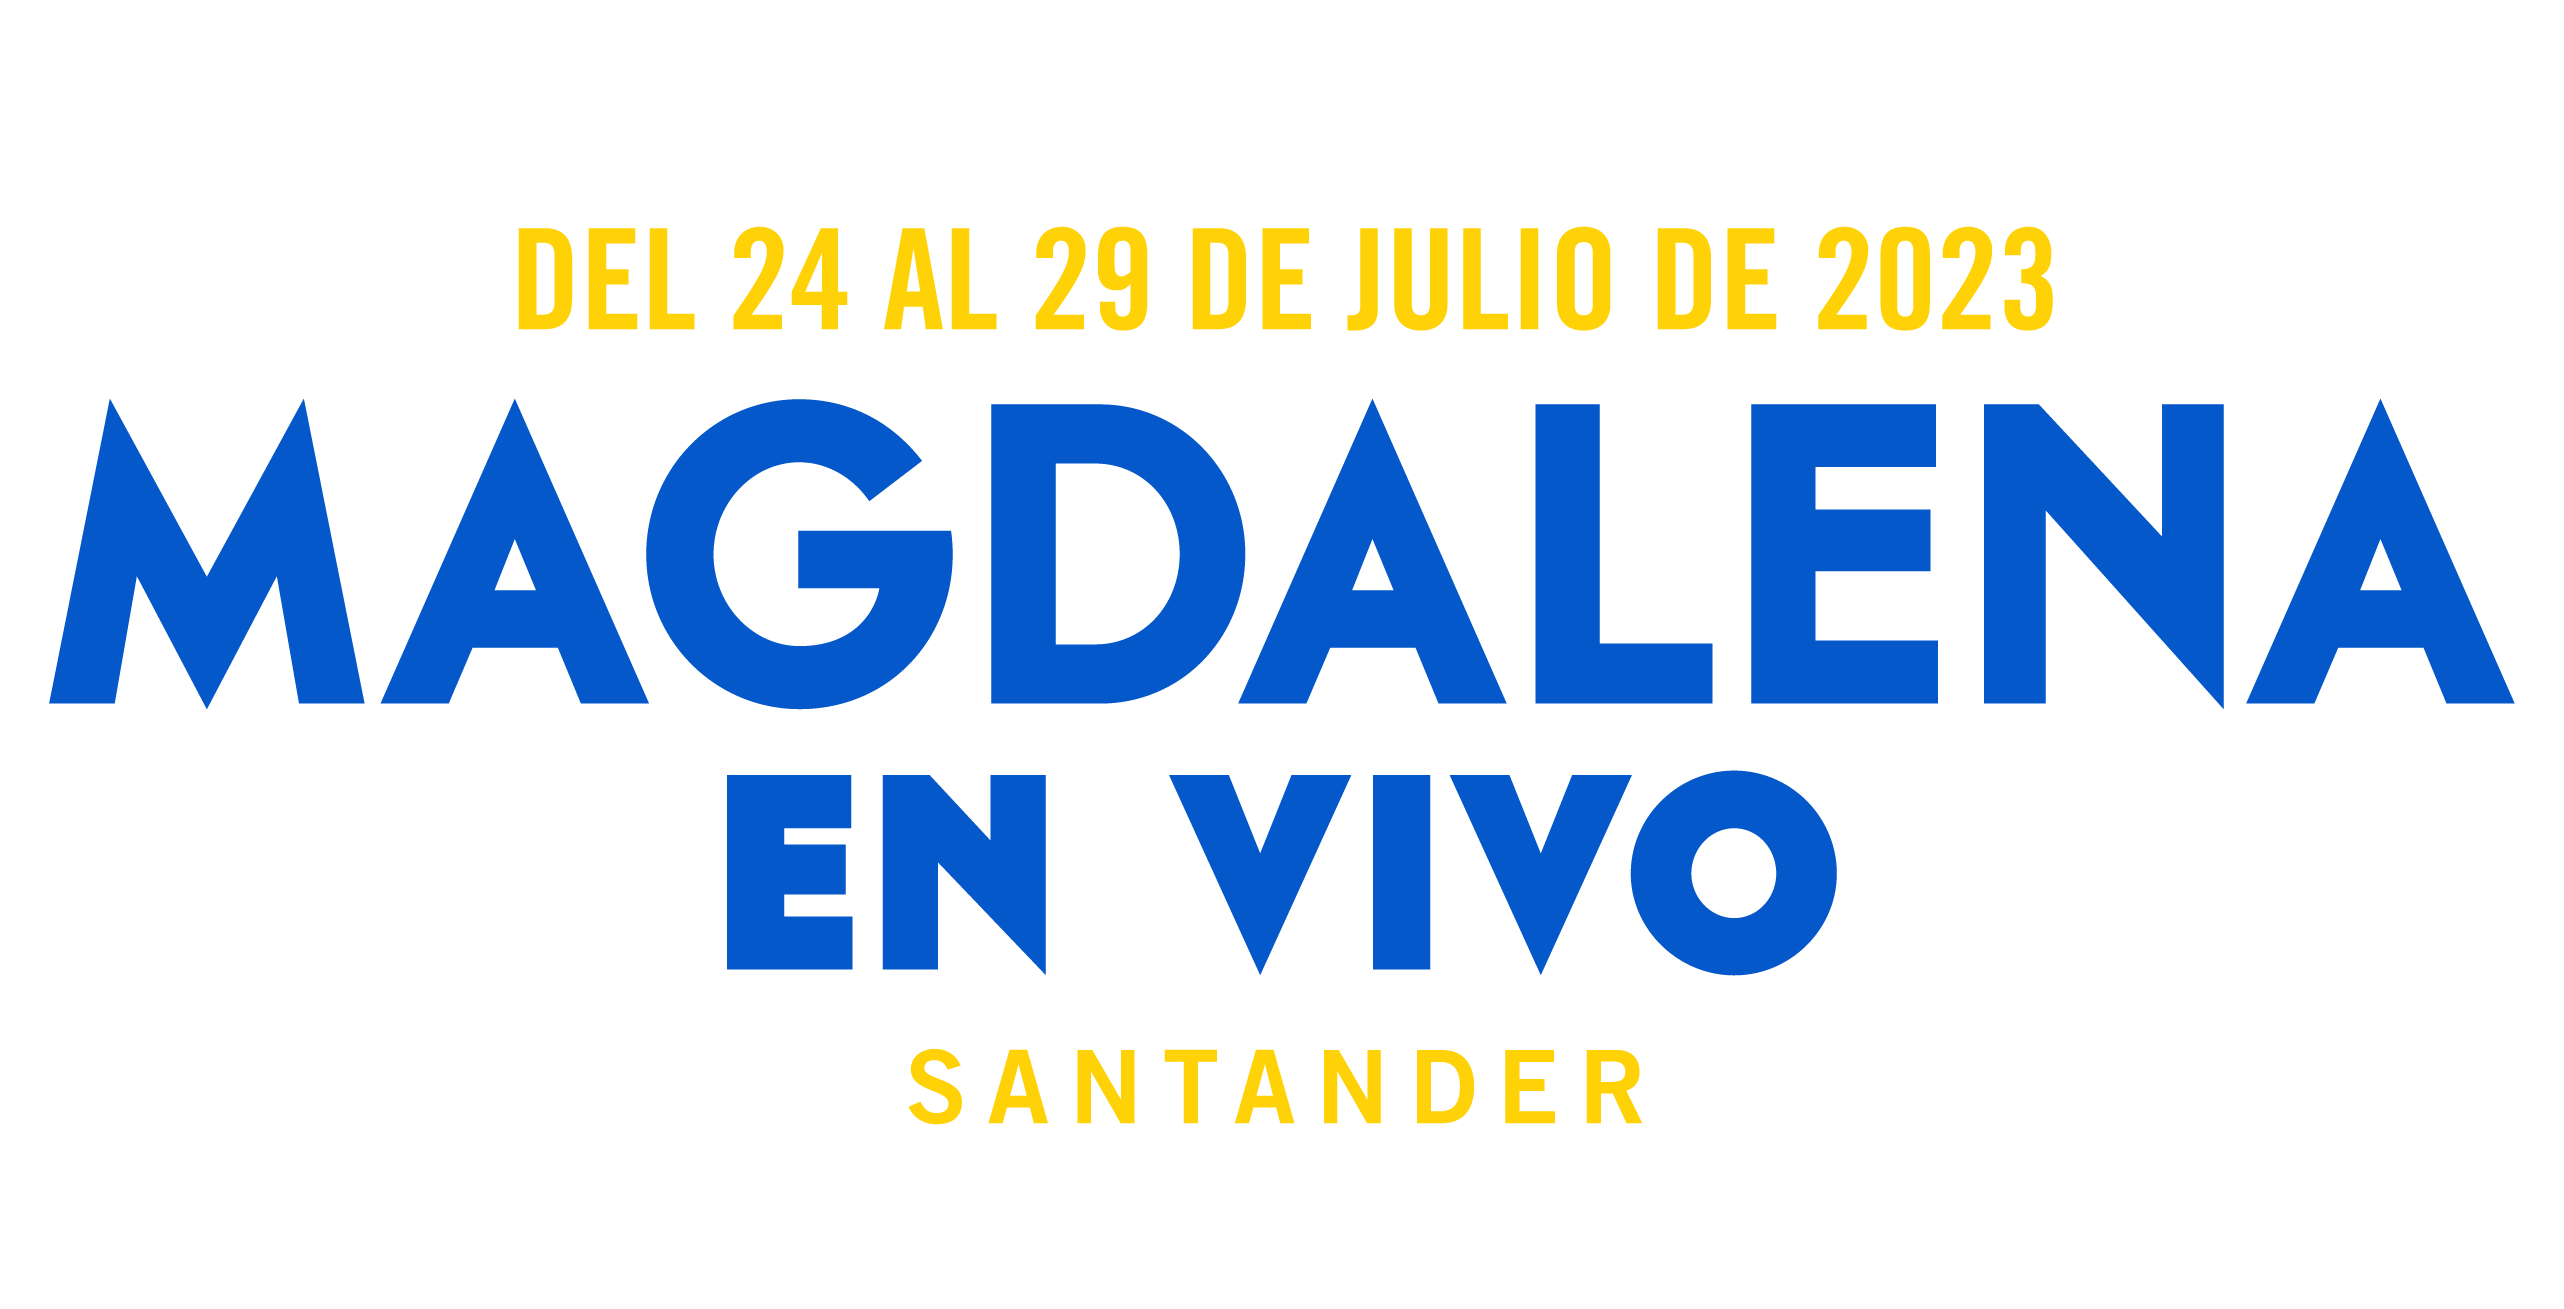 MAGDALENA EN VIVO | Festival de Música en Santander